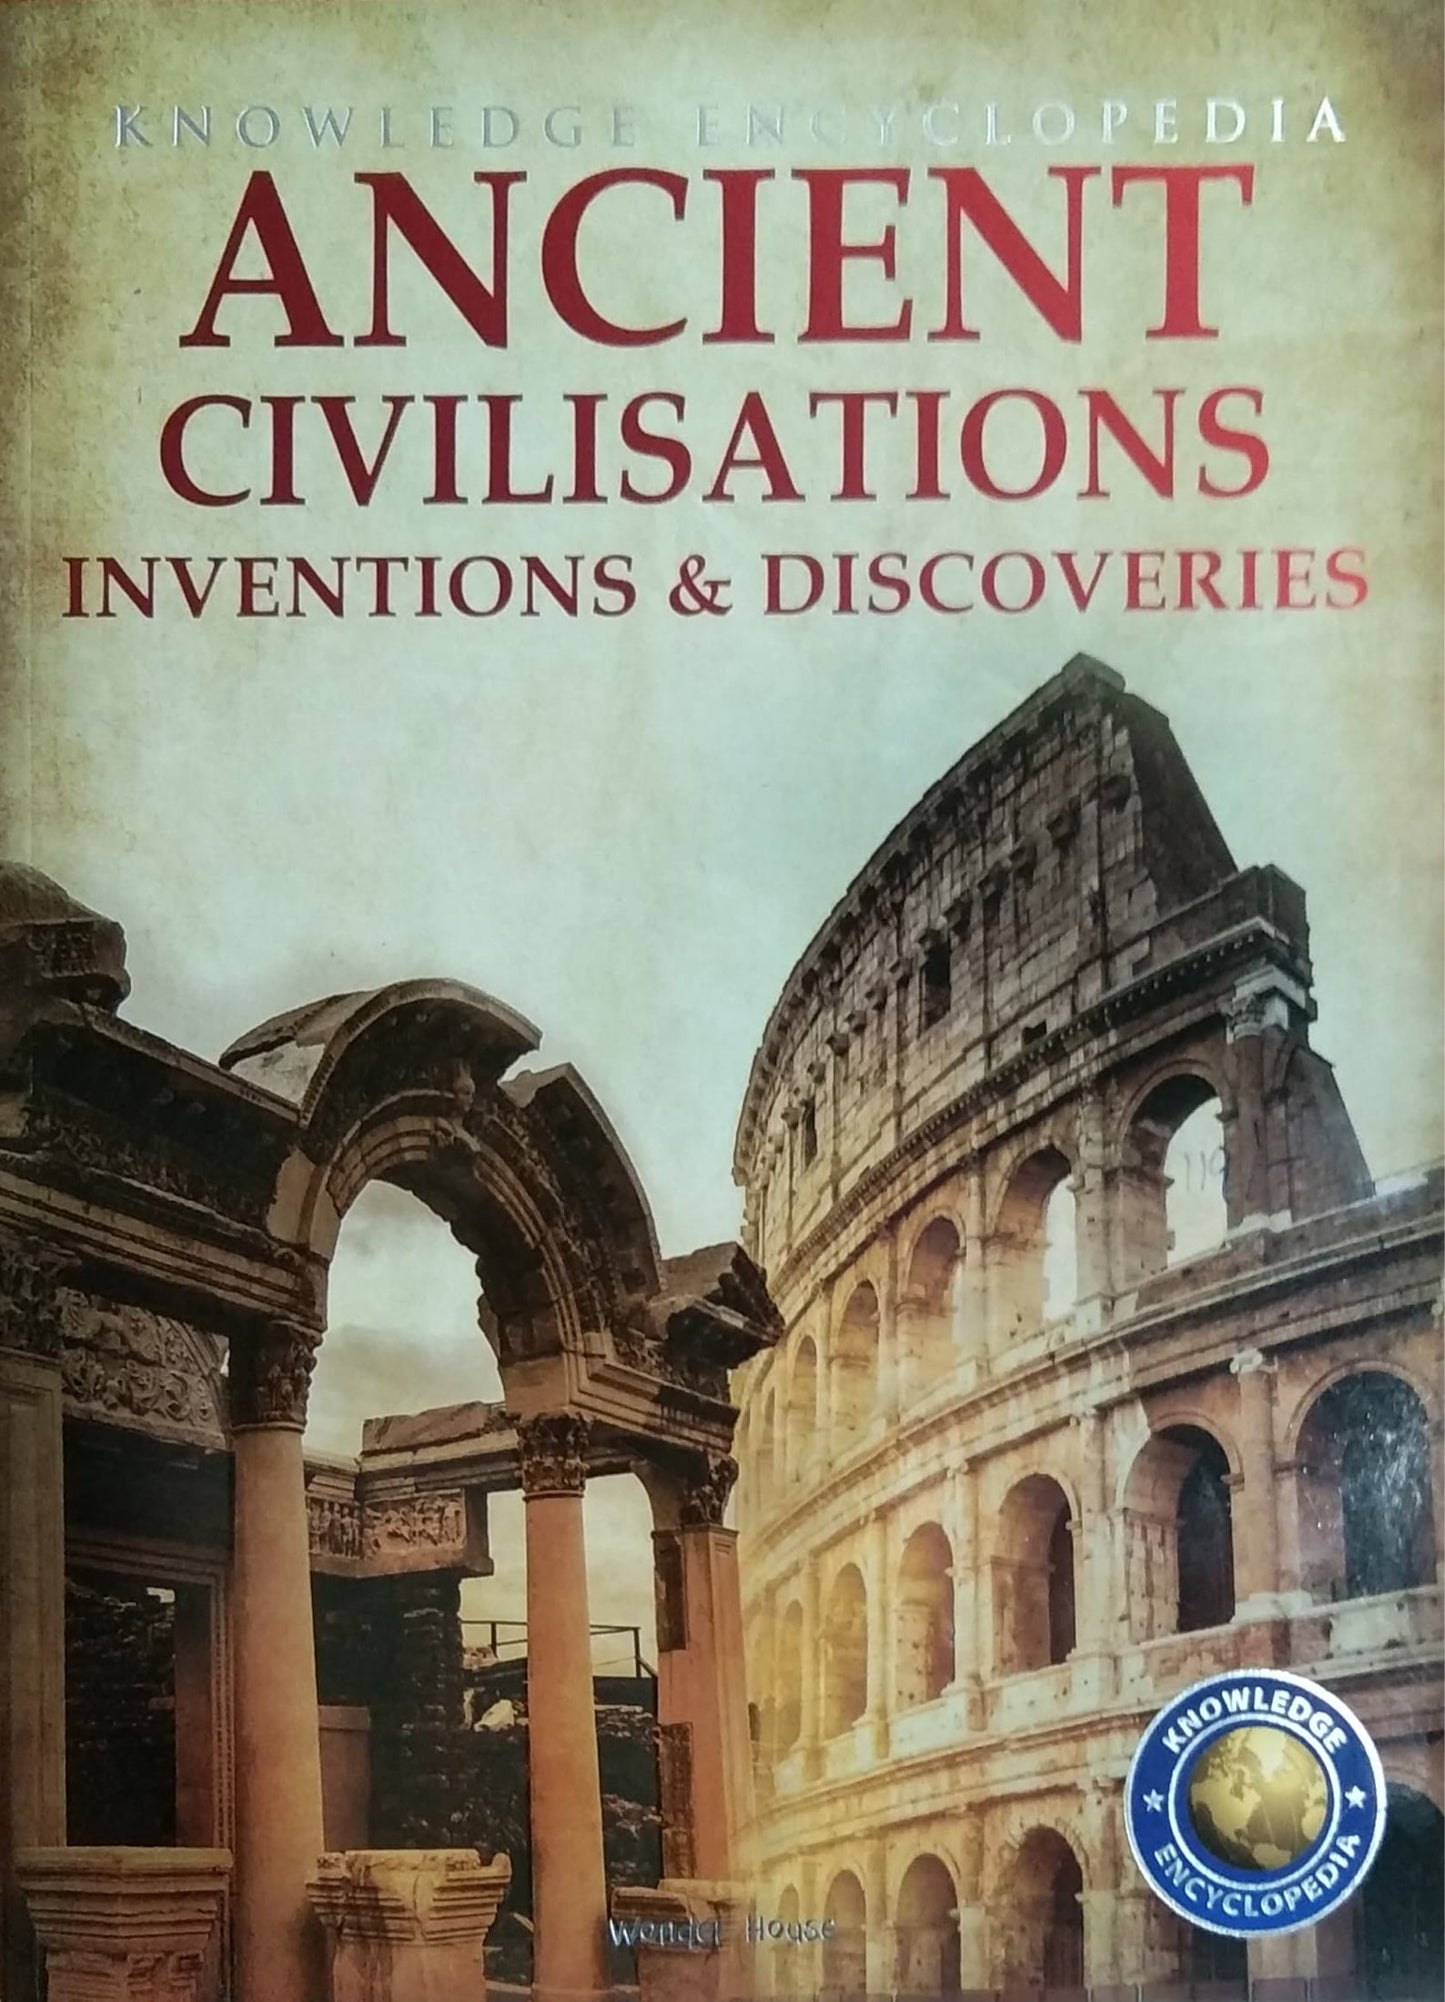 ANCIENT CIVILISATIONS